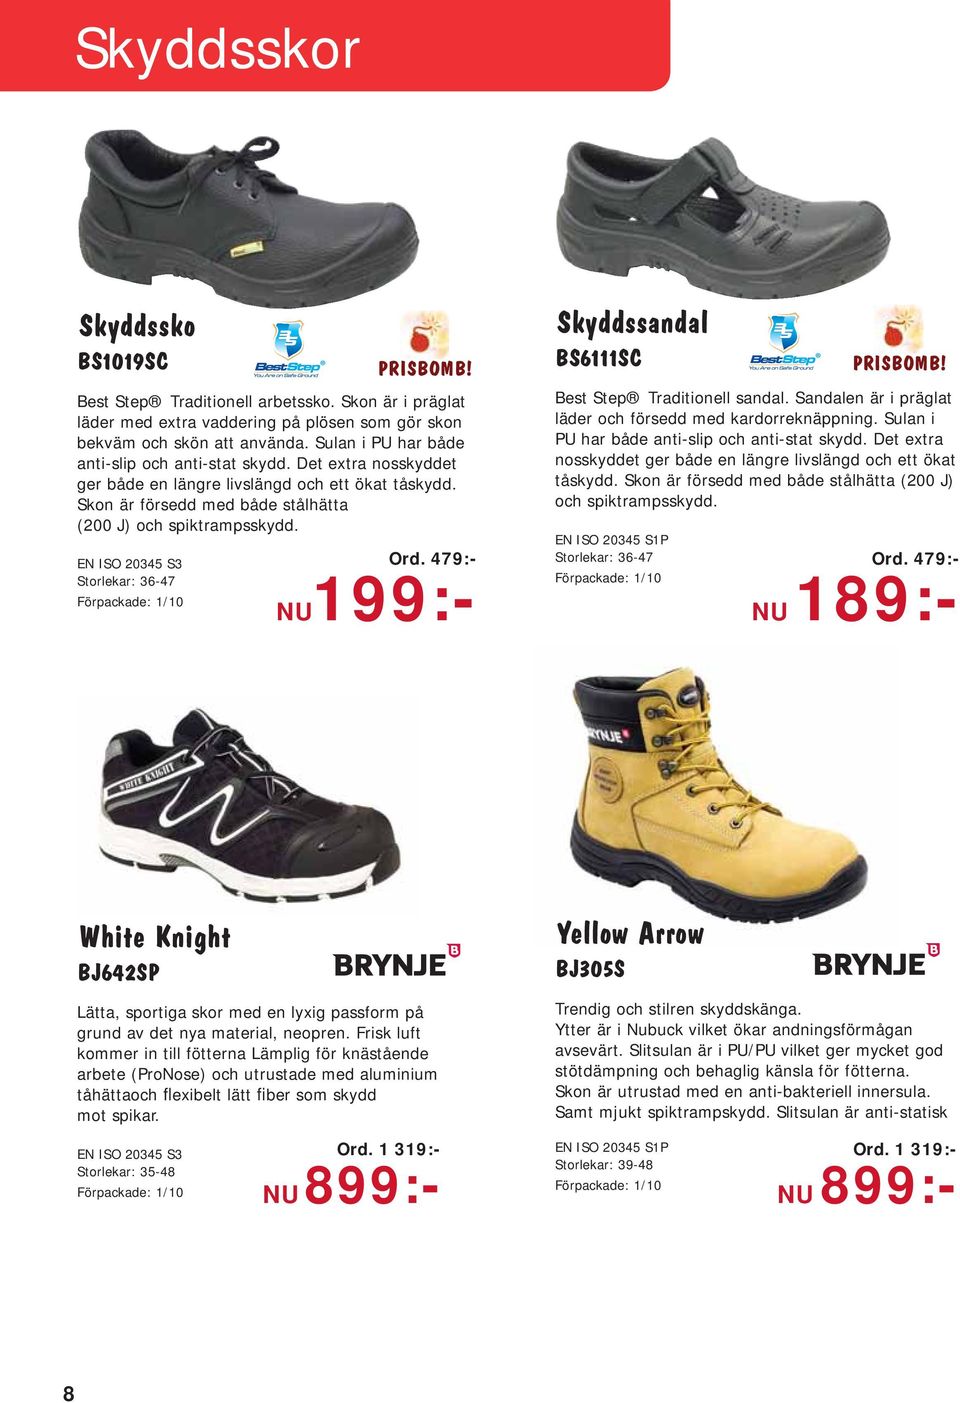 EN ISO 20345 S3 Storlekar: 36-47 Ord. 479:- Ord. 479:- NU199:- Skyddssandal BS6111SC Best Step Traditionell sandal. Sandalen är i präglat läder och försedd med kardorreknäppning.